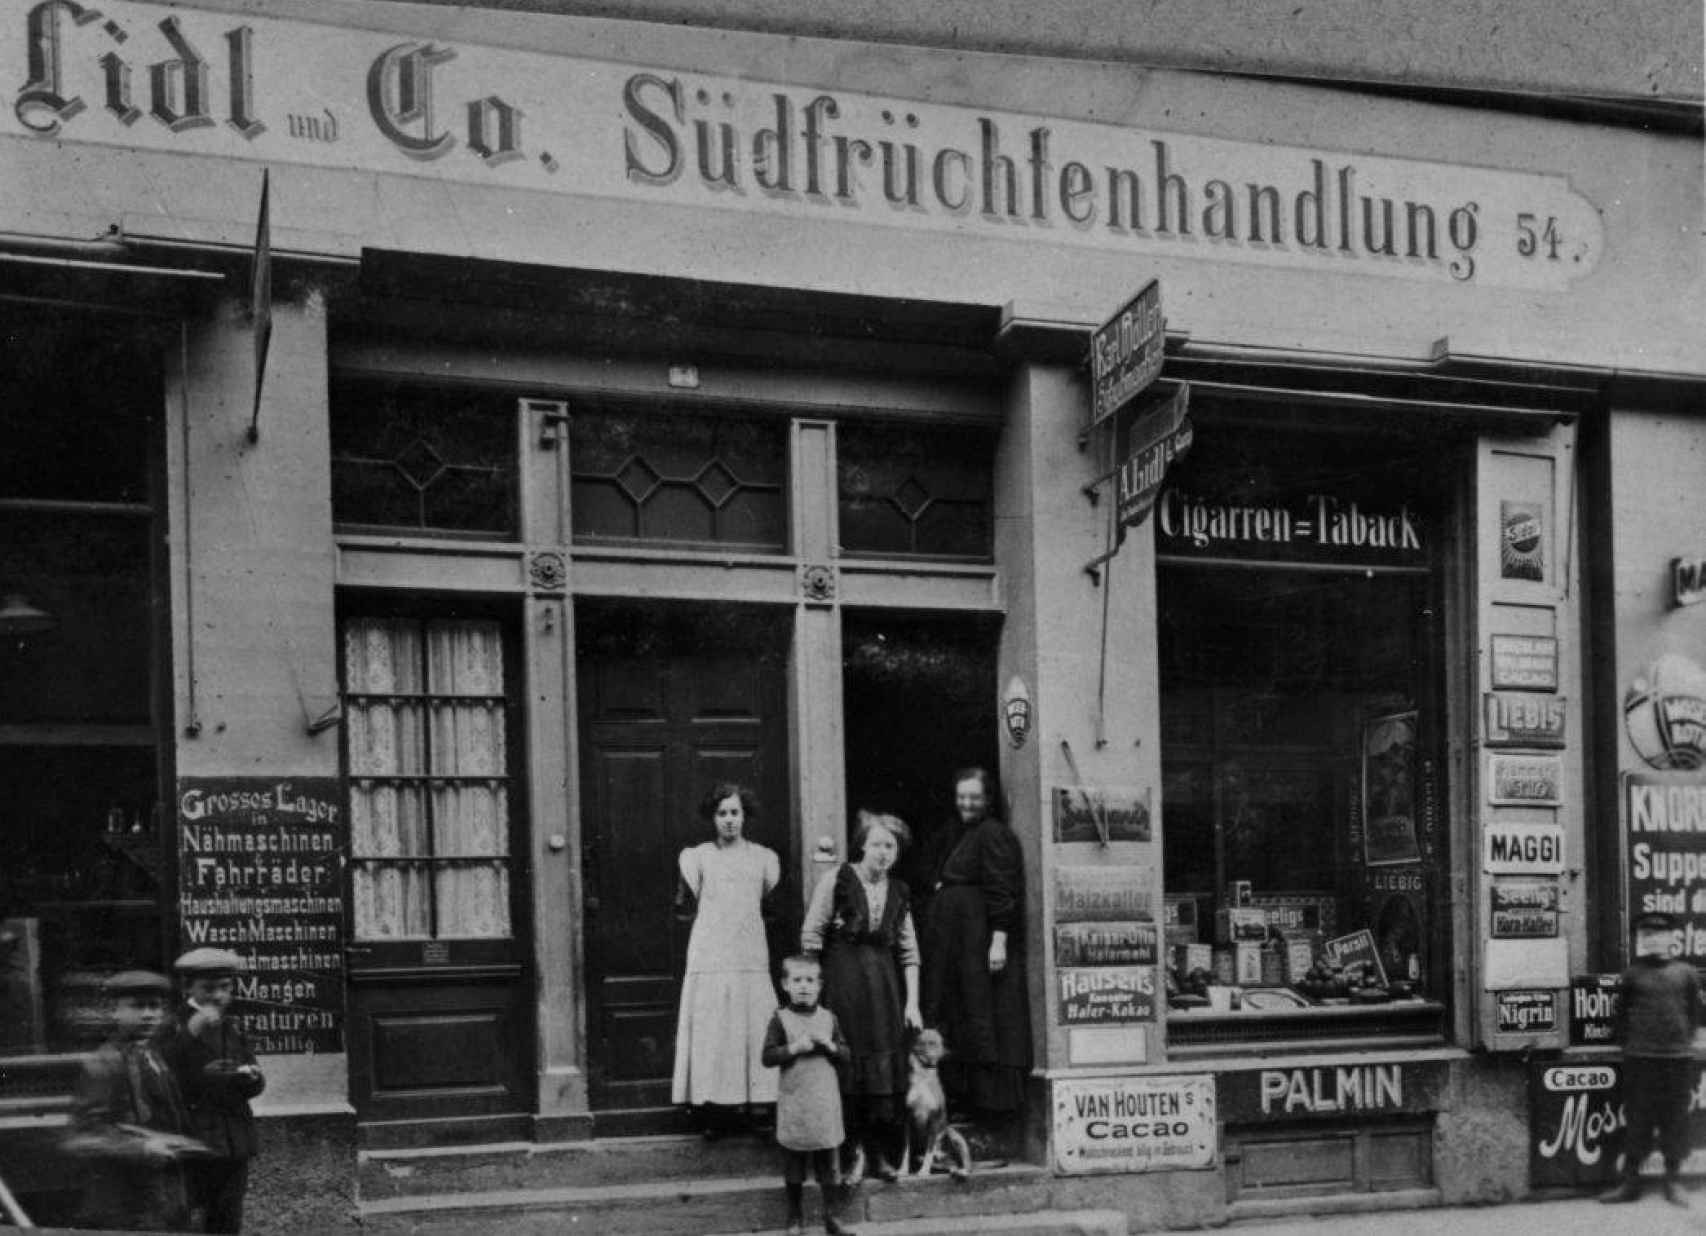 Imagen de los distribuidores de frutas Lidl con los que se asoció el padre de Dieter Schwarz.